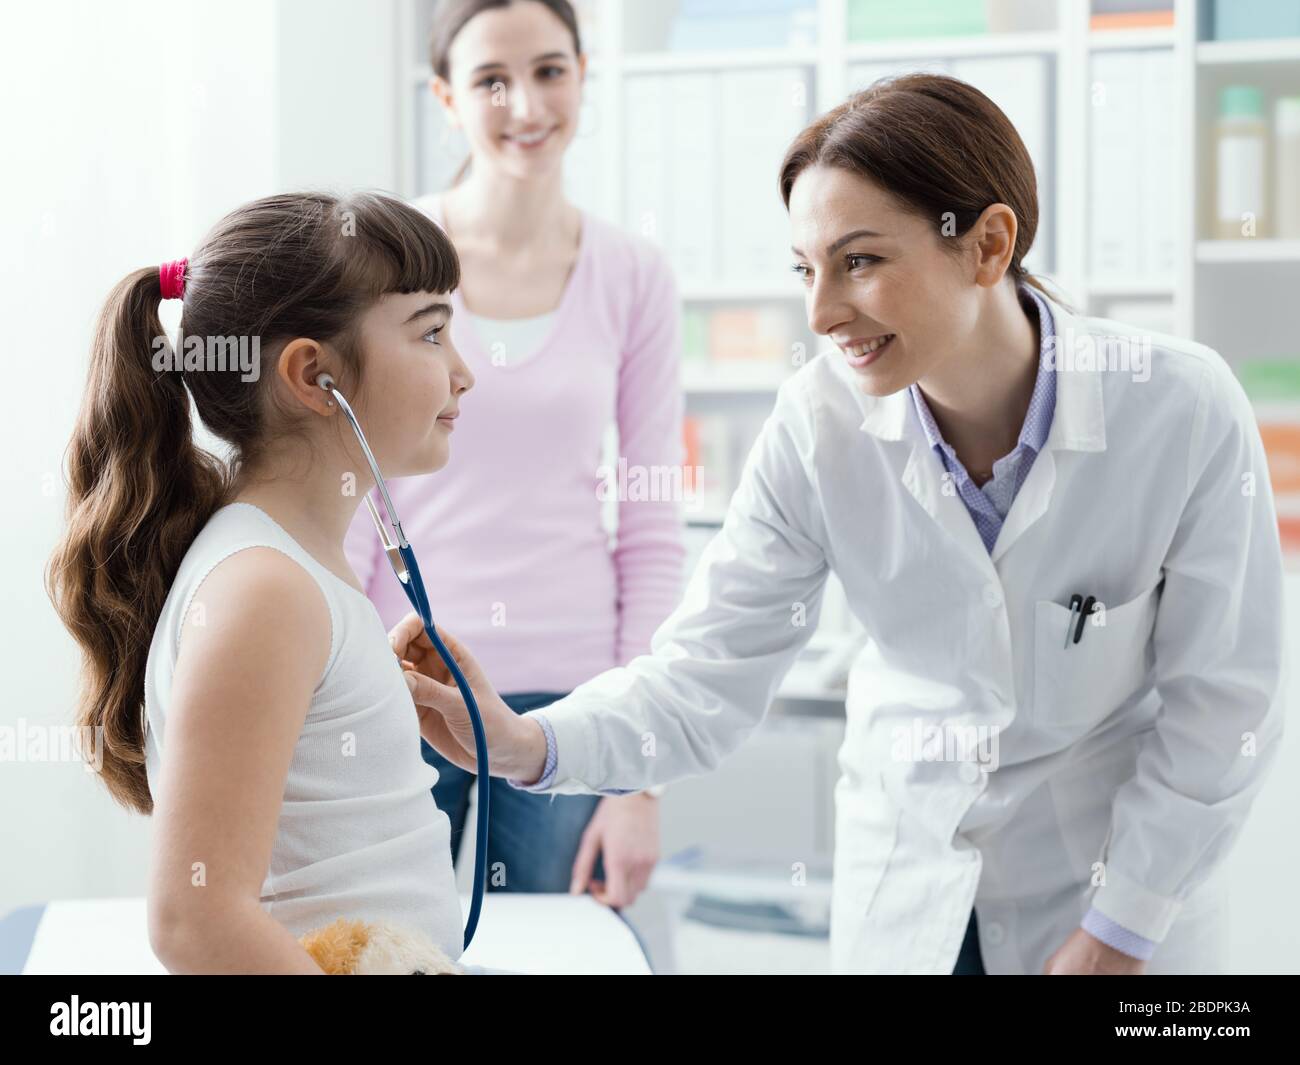 Weibliche Ärztin untersucht ein süßes lächelndes Mädchen mit einem Stethoskop, die Mutter ist neben ihr, Kinder- und Gesundheitskonzept Stockfoto